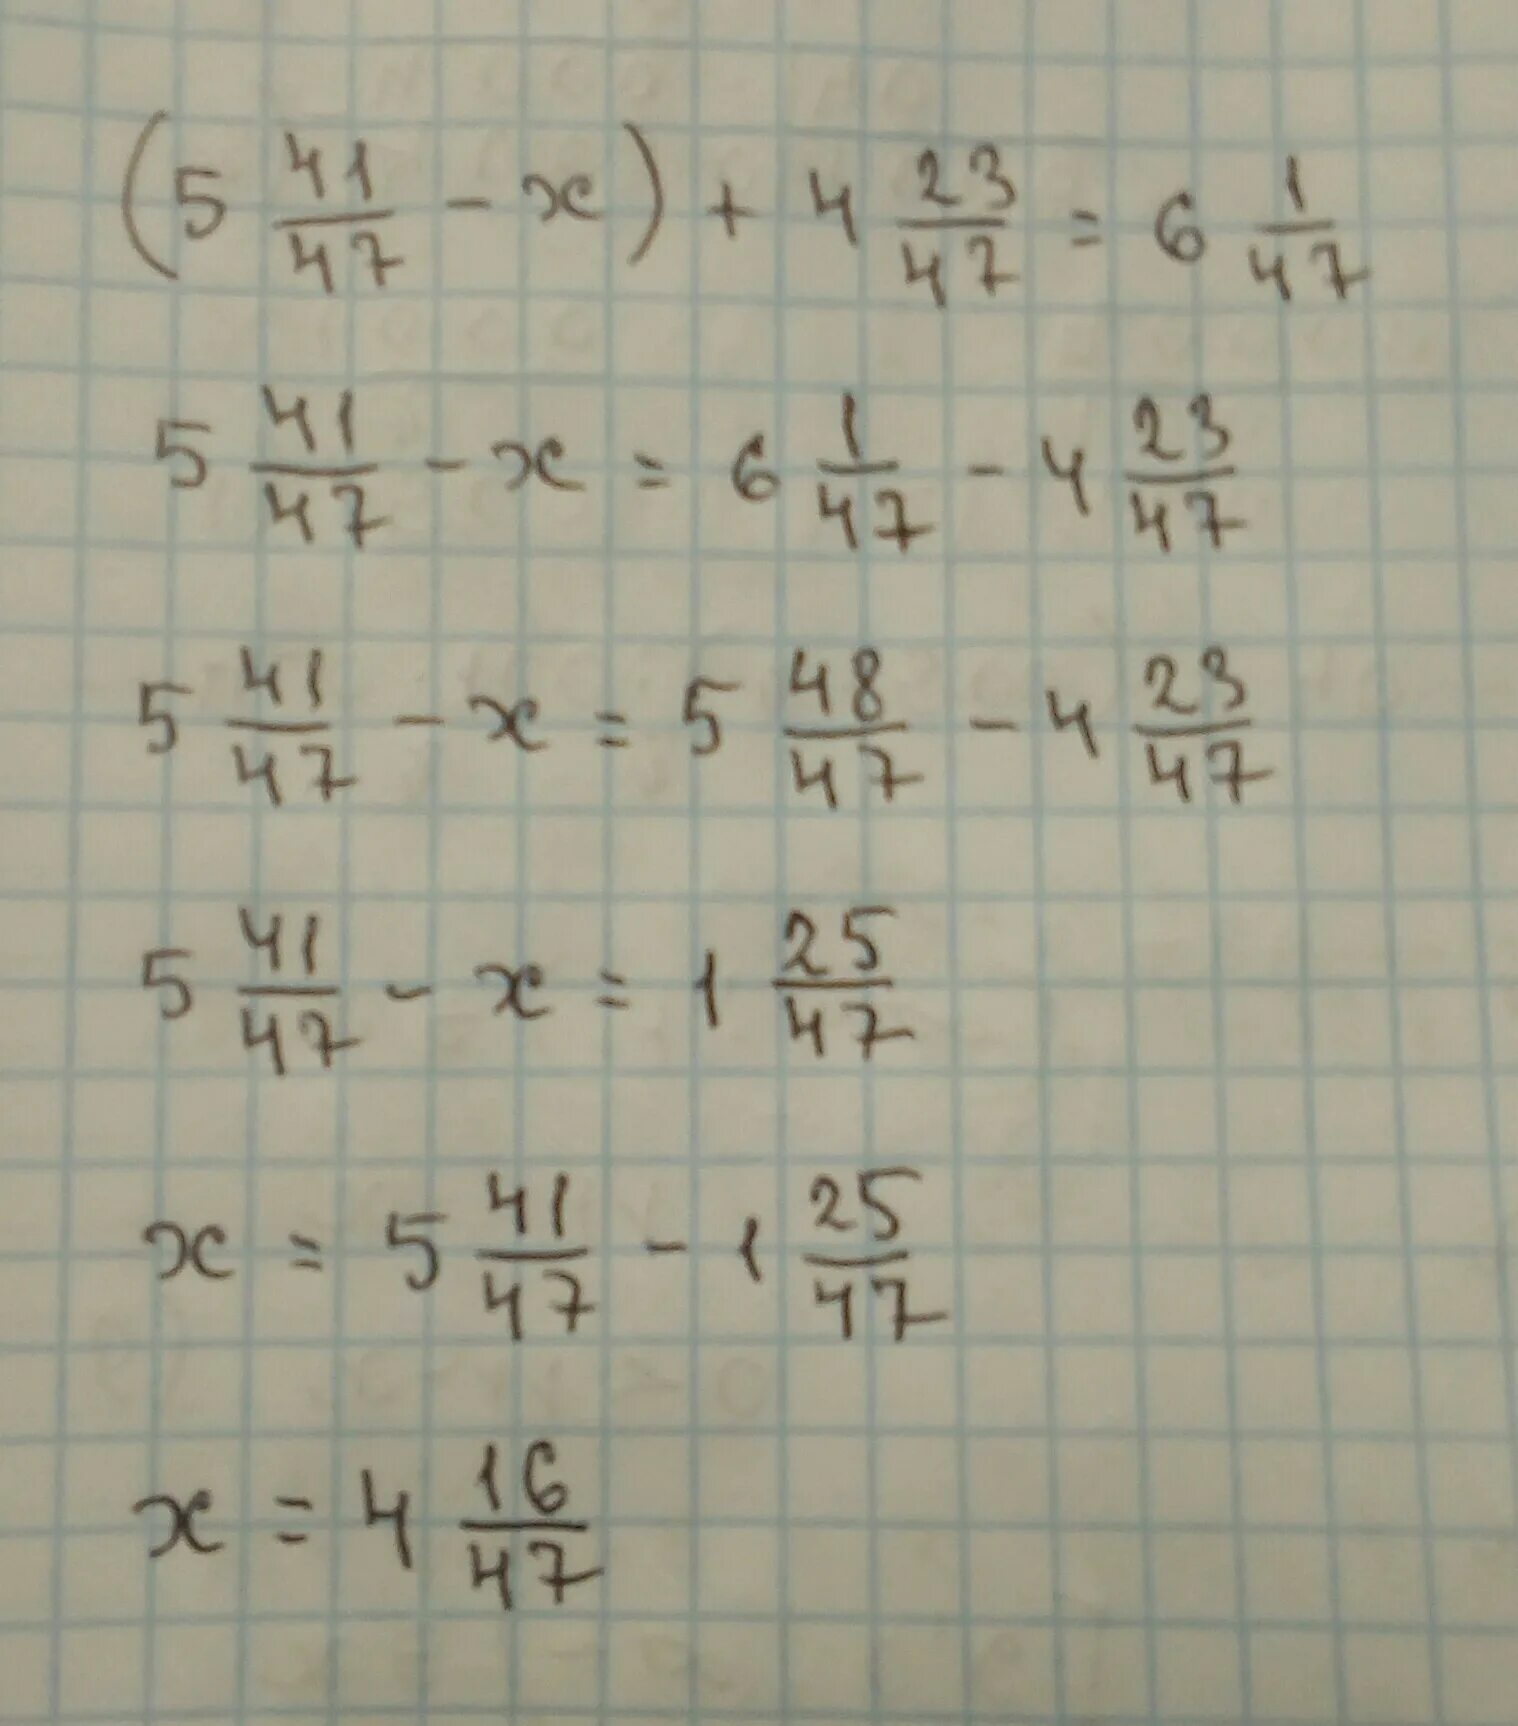 1 47 06. 5 44/47-Х +4 23/47 6 1/47. 4,2:1,47 Решение. Пример 47 6. -47x=1.